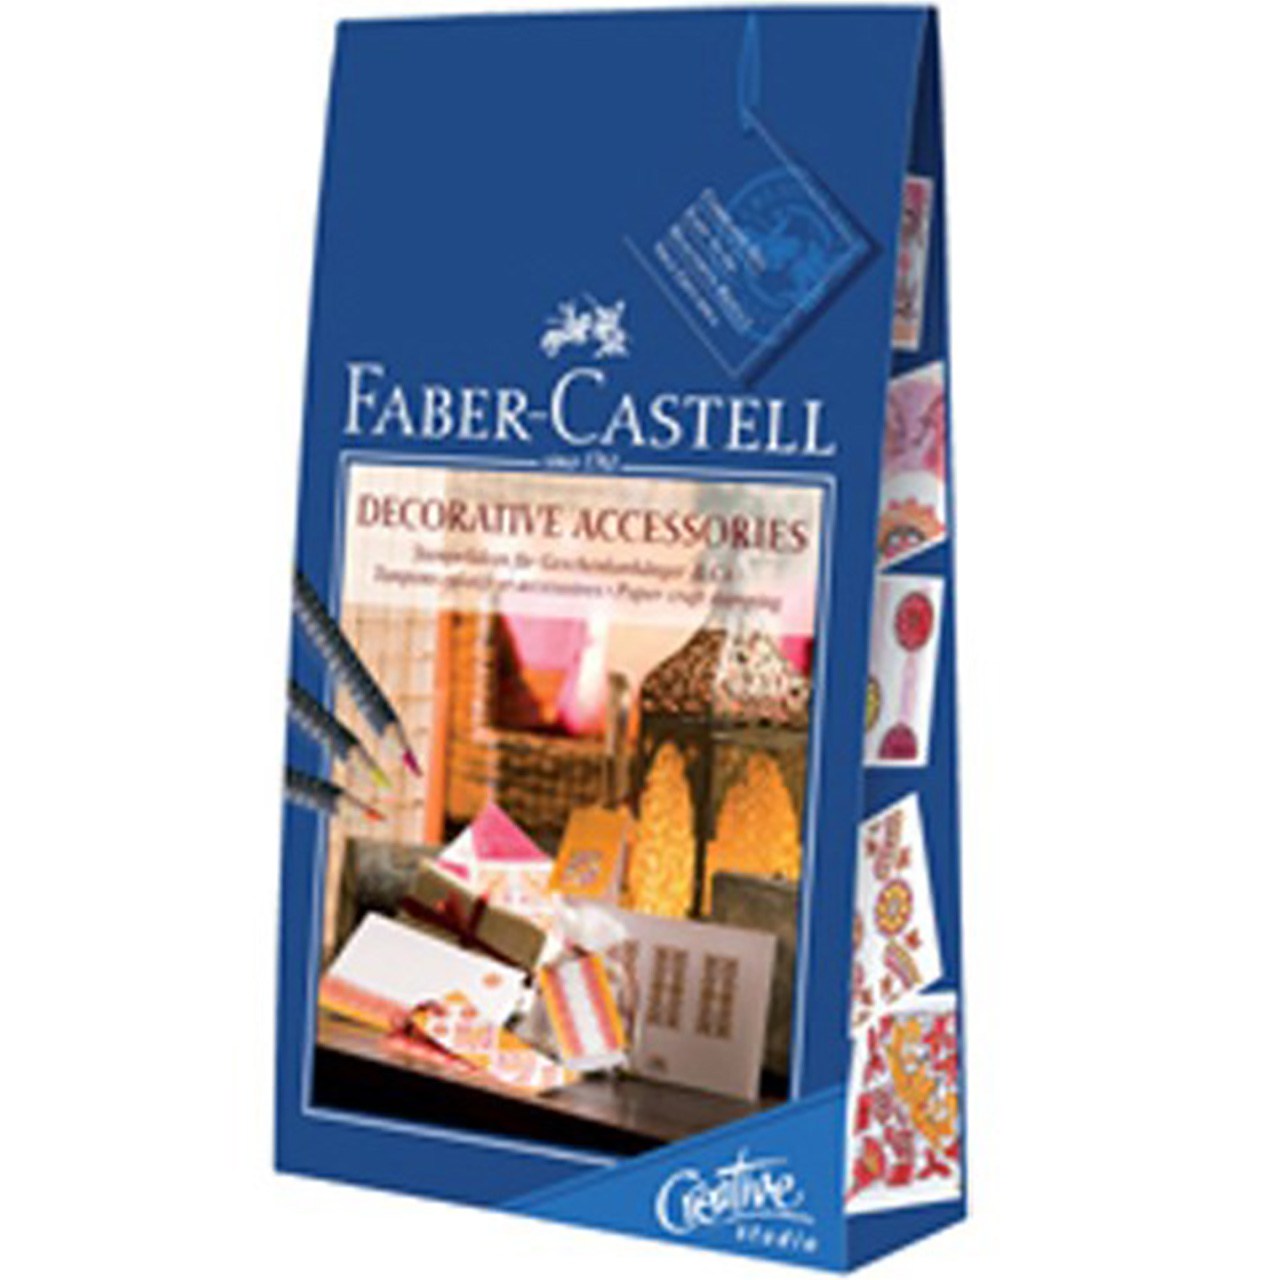 ست خلاقیت Faber Castell مدل Decorative Accessories کد 181035